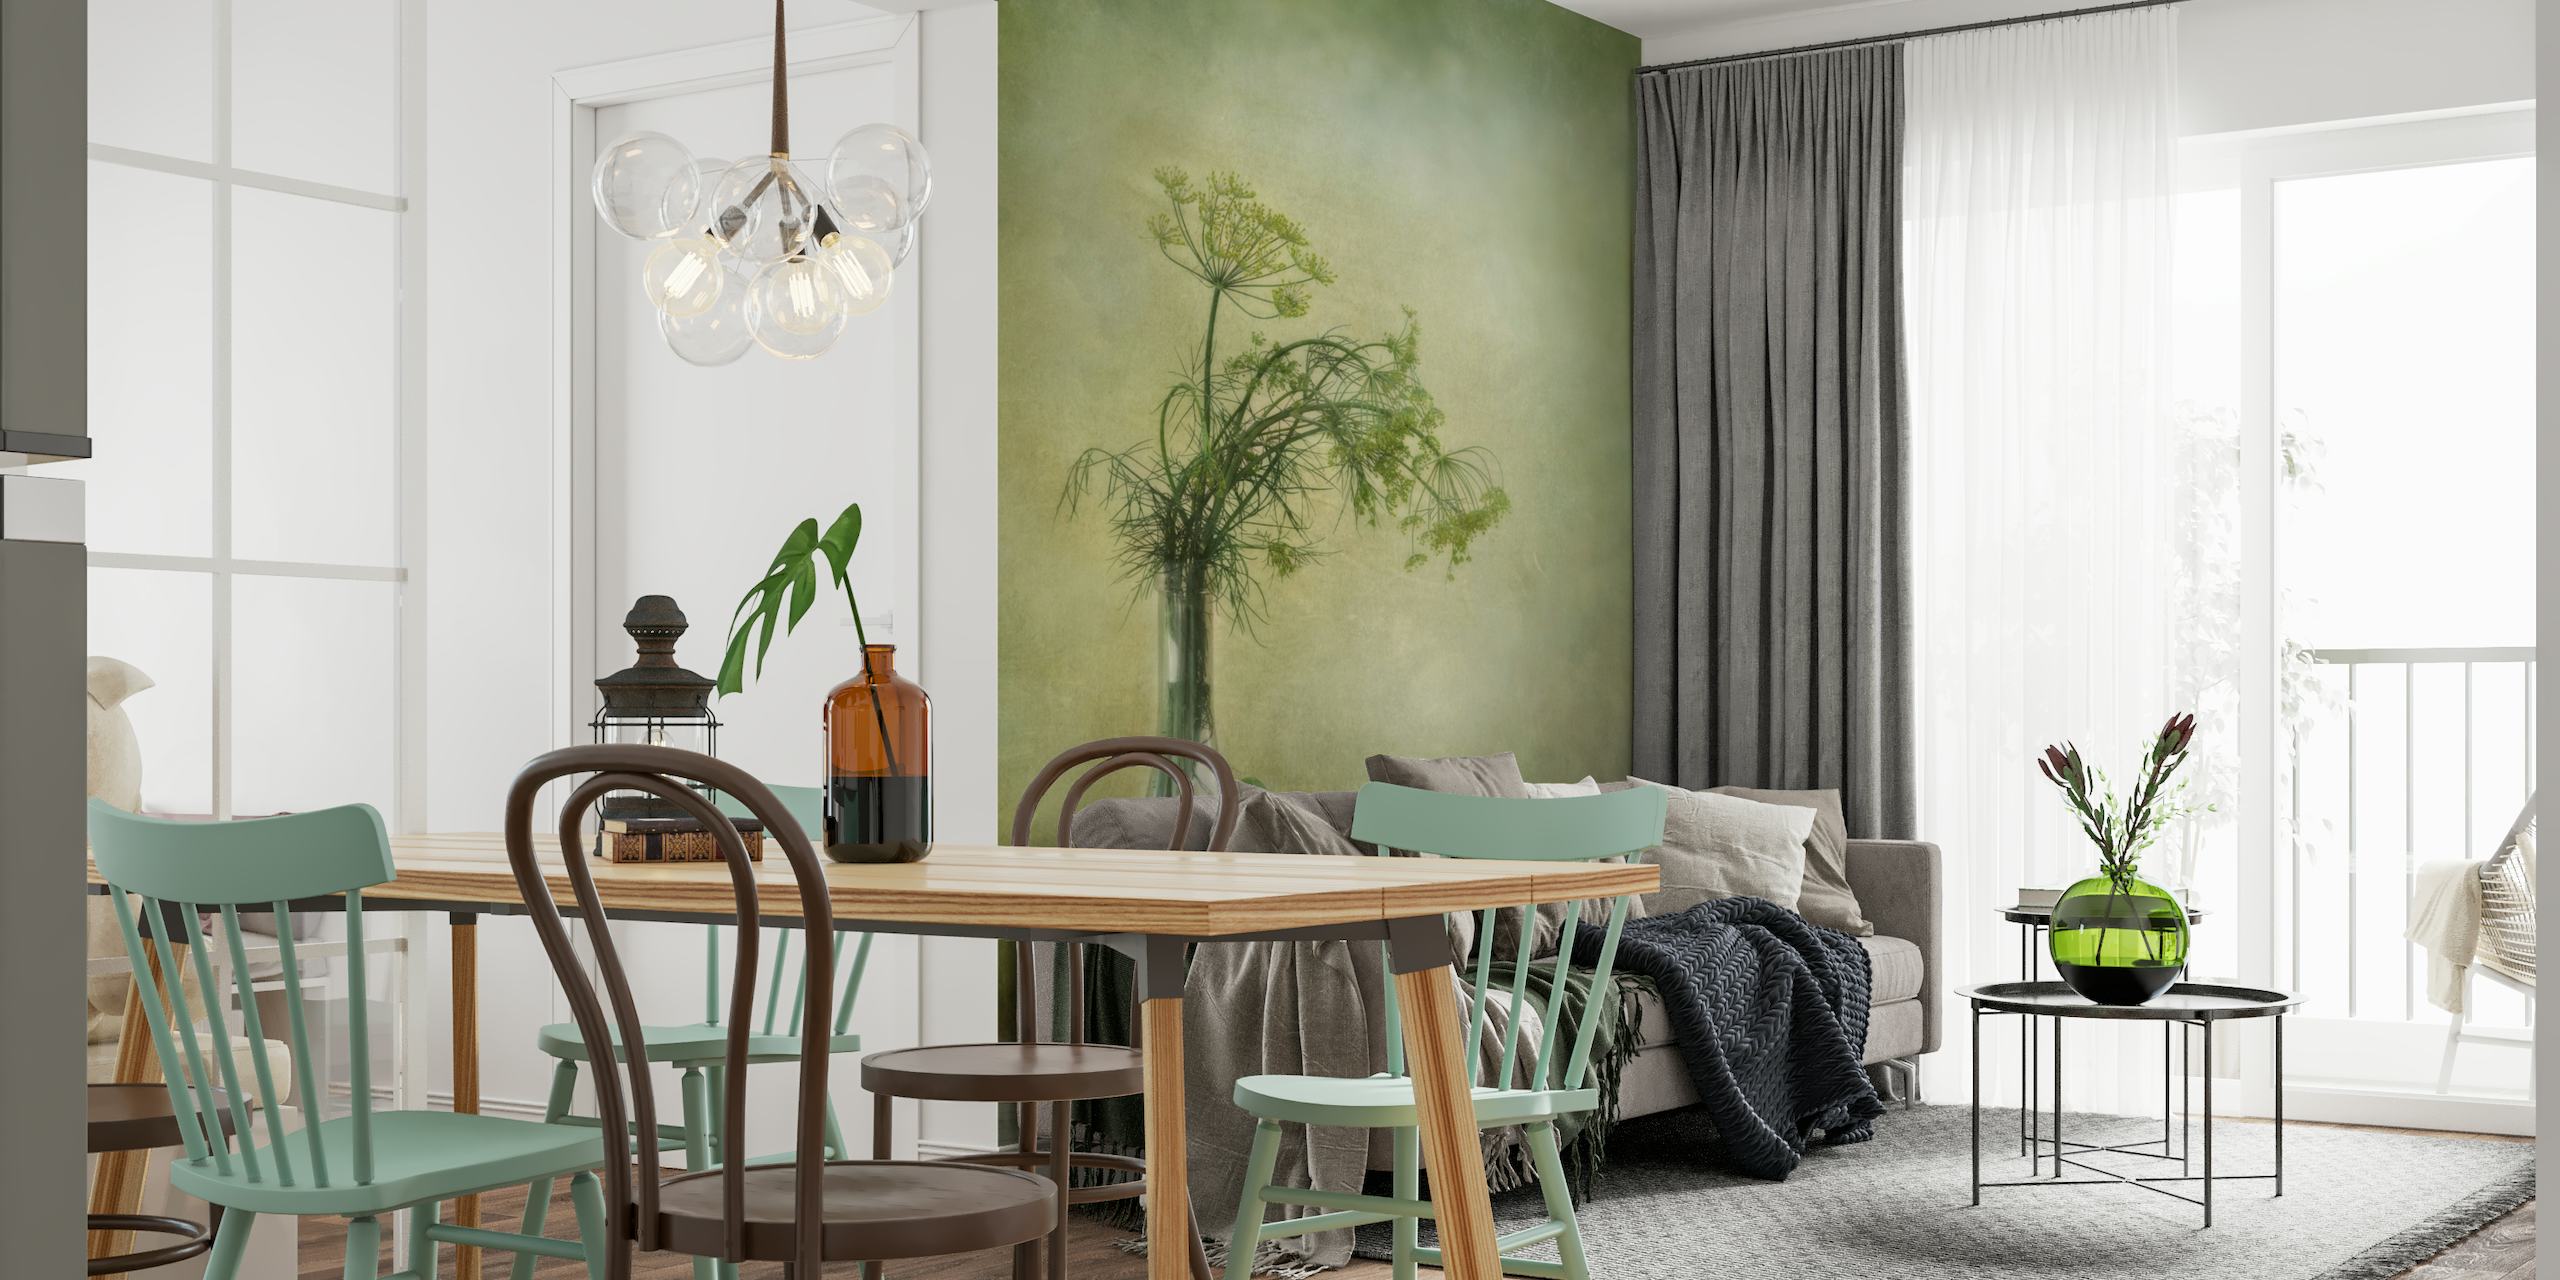 Vægmaleri med en vase med dild og en agurk mod en tekstureret grøn baggrund